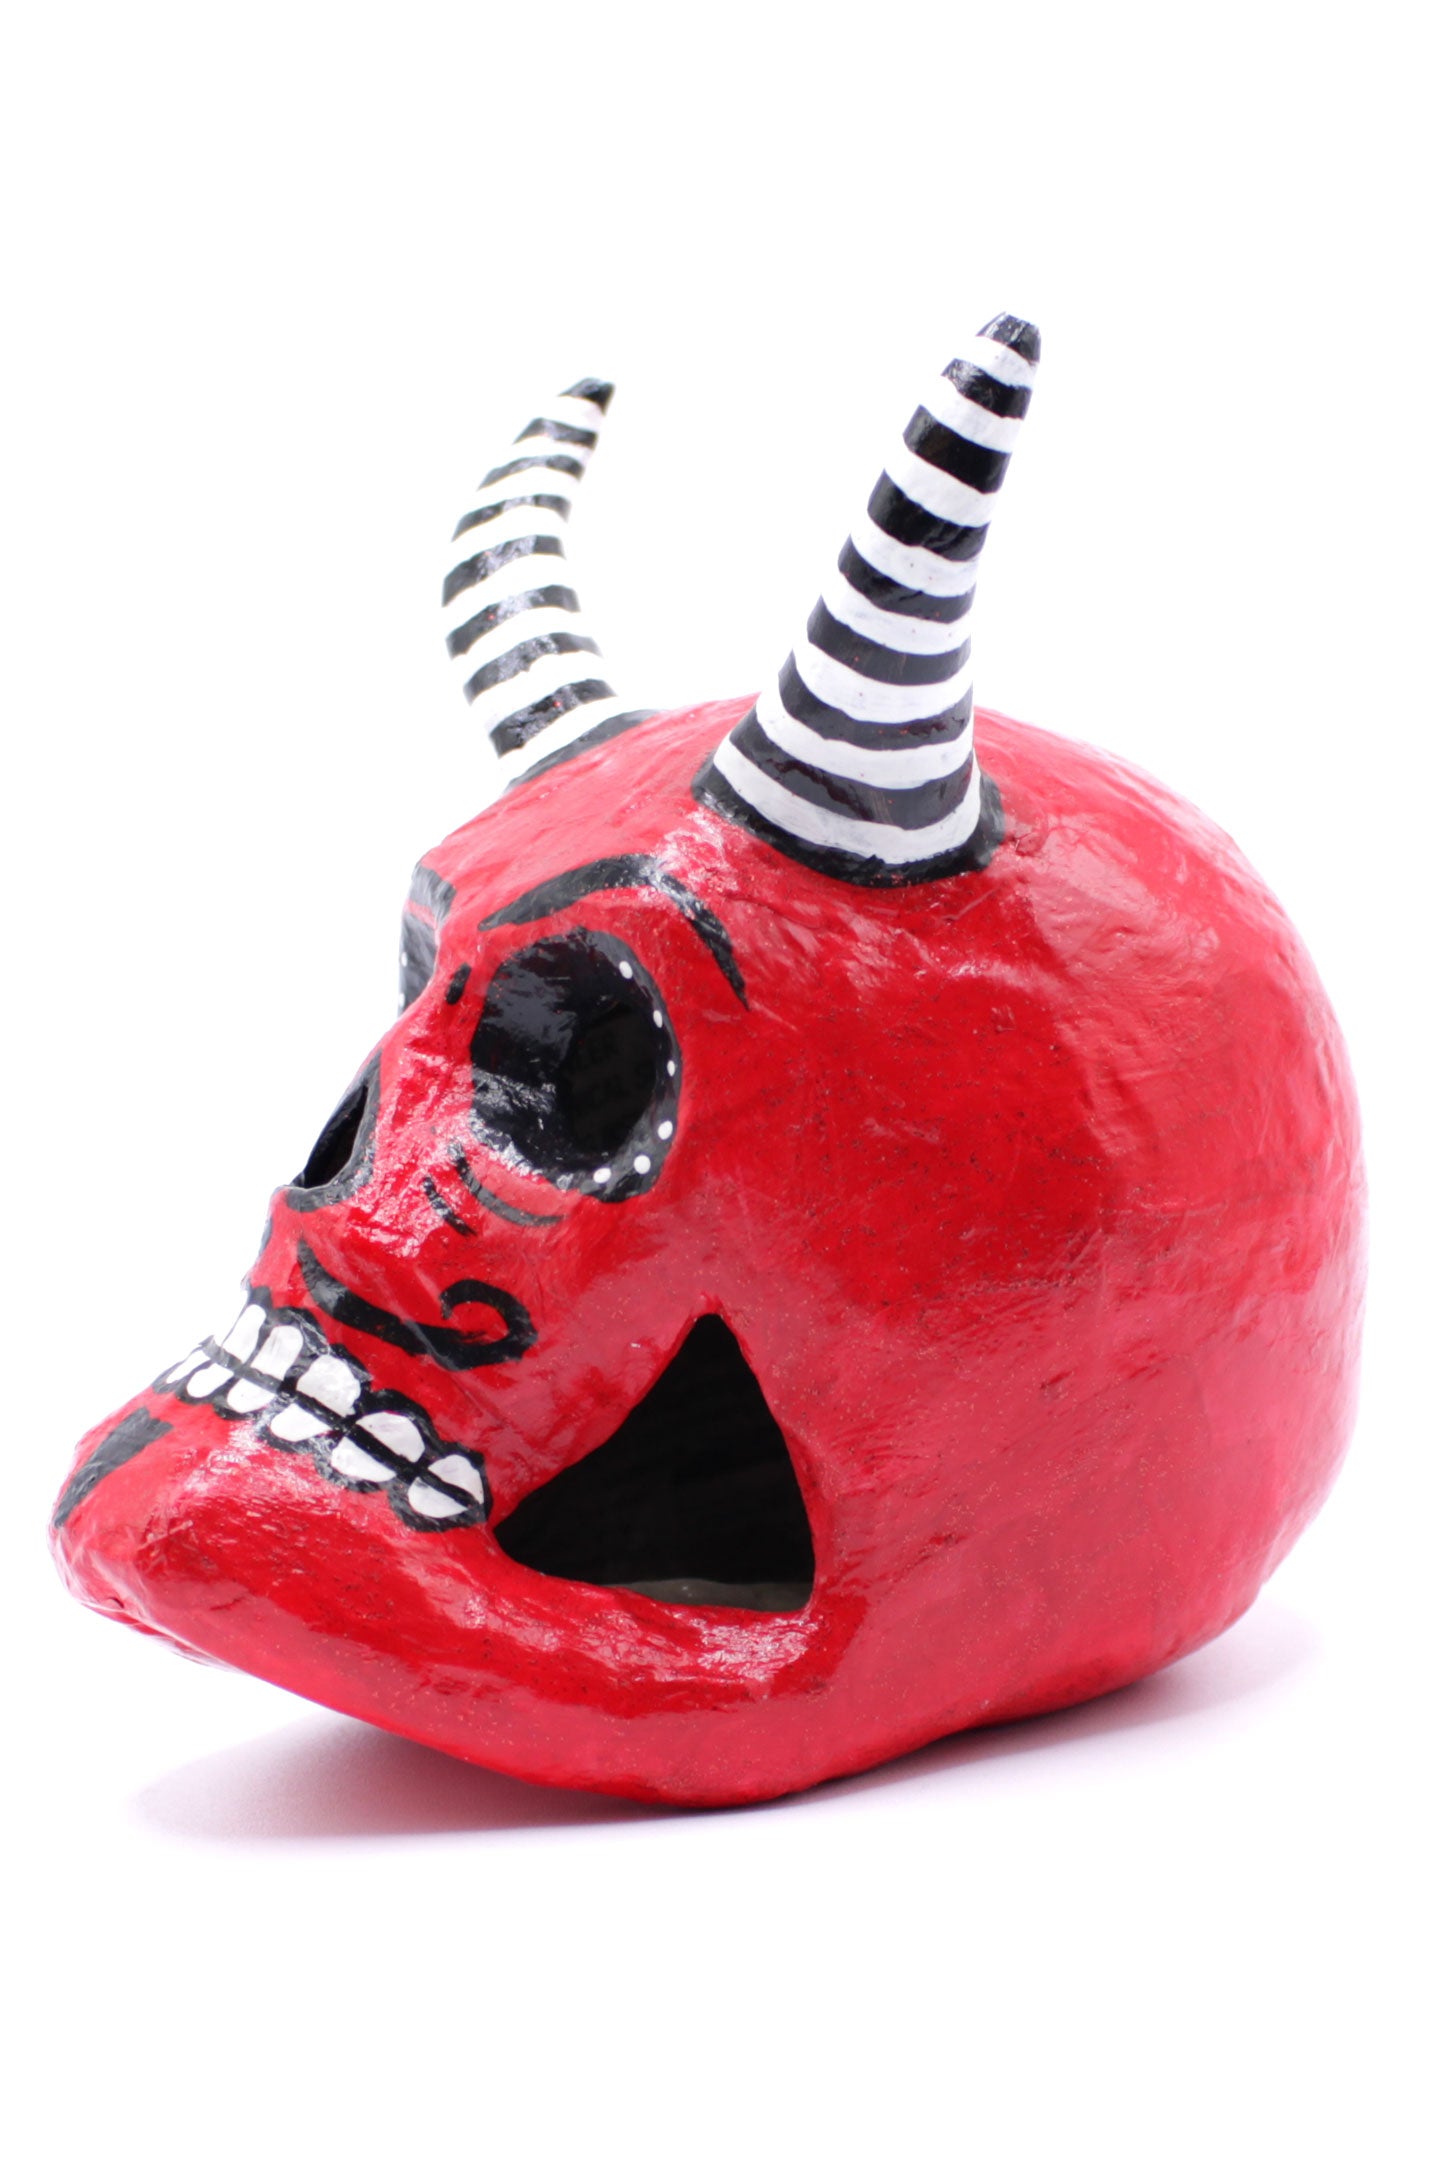 Diablito Judas Calavera Red Skull with Stripes by Casita De Los Muertos